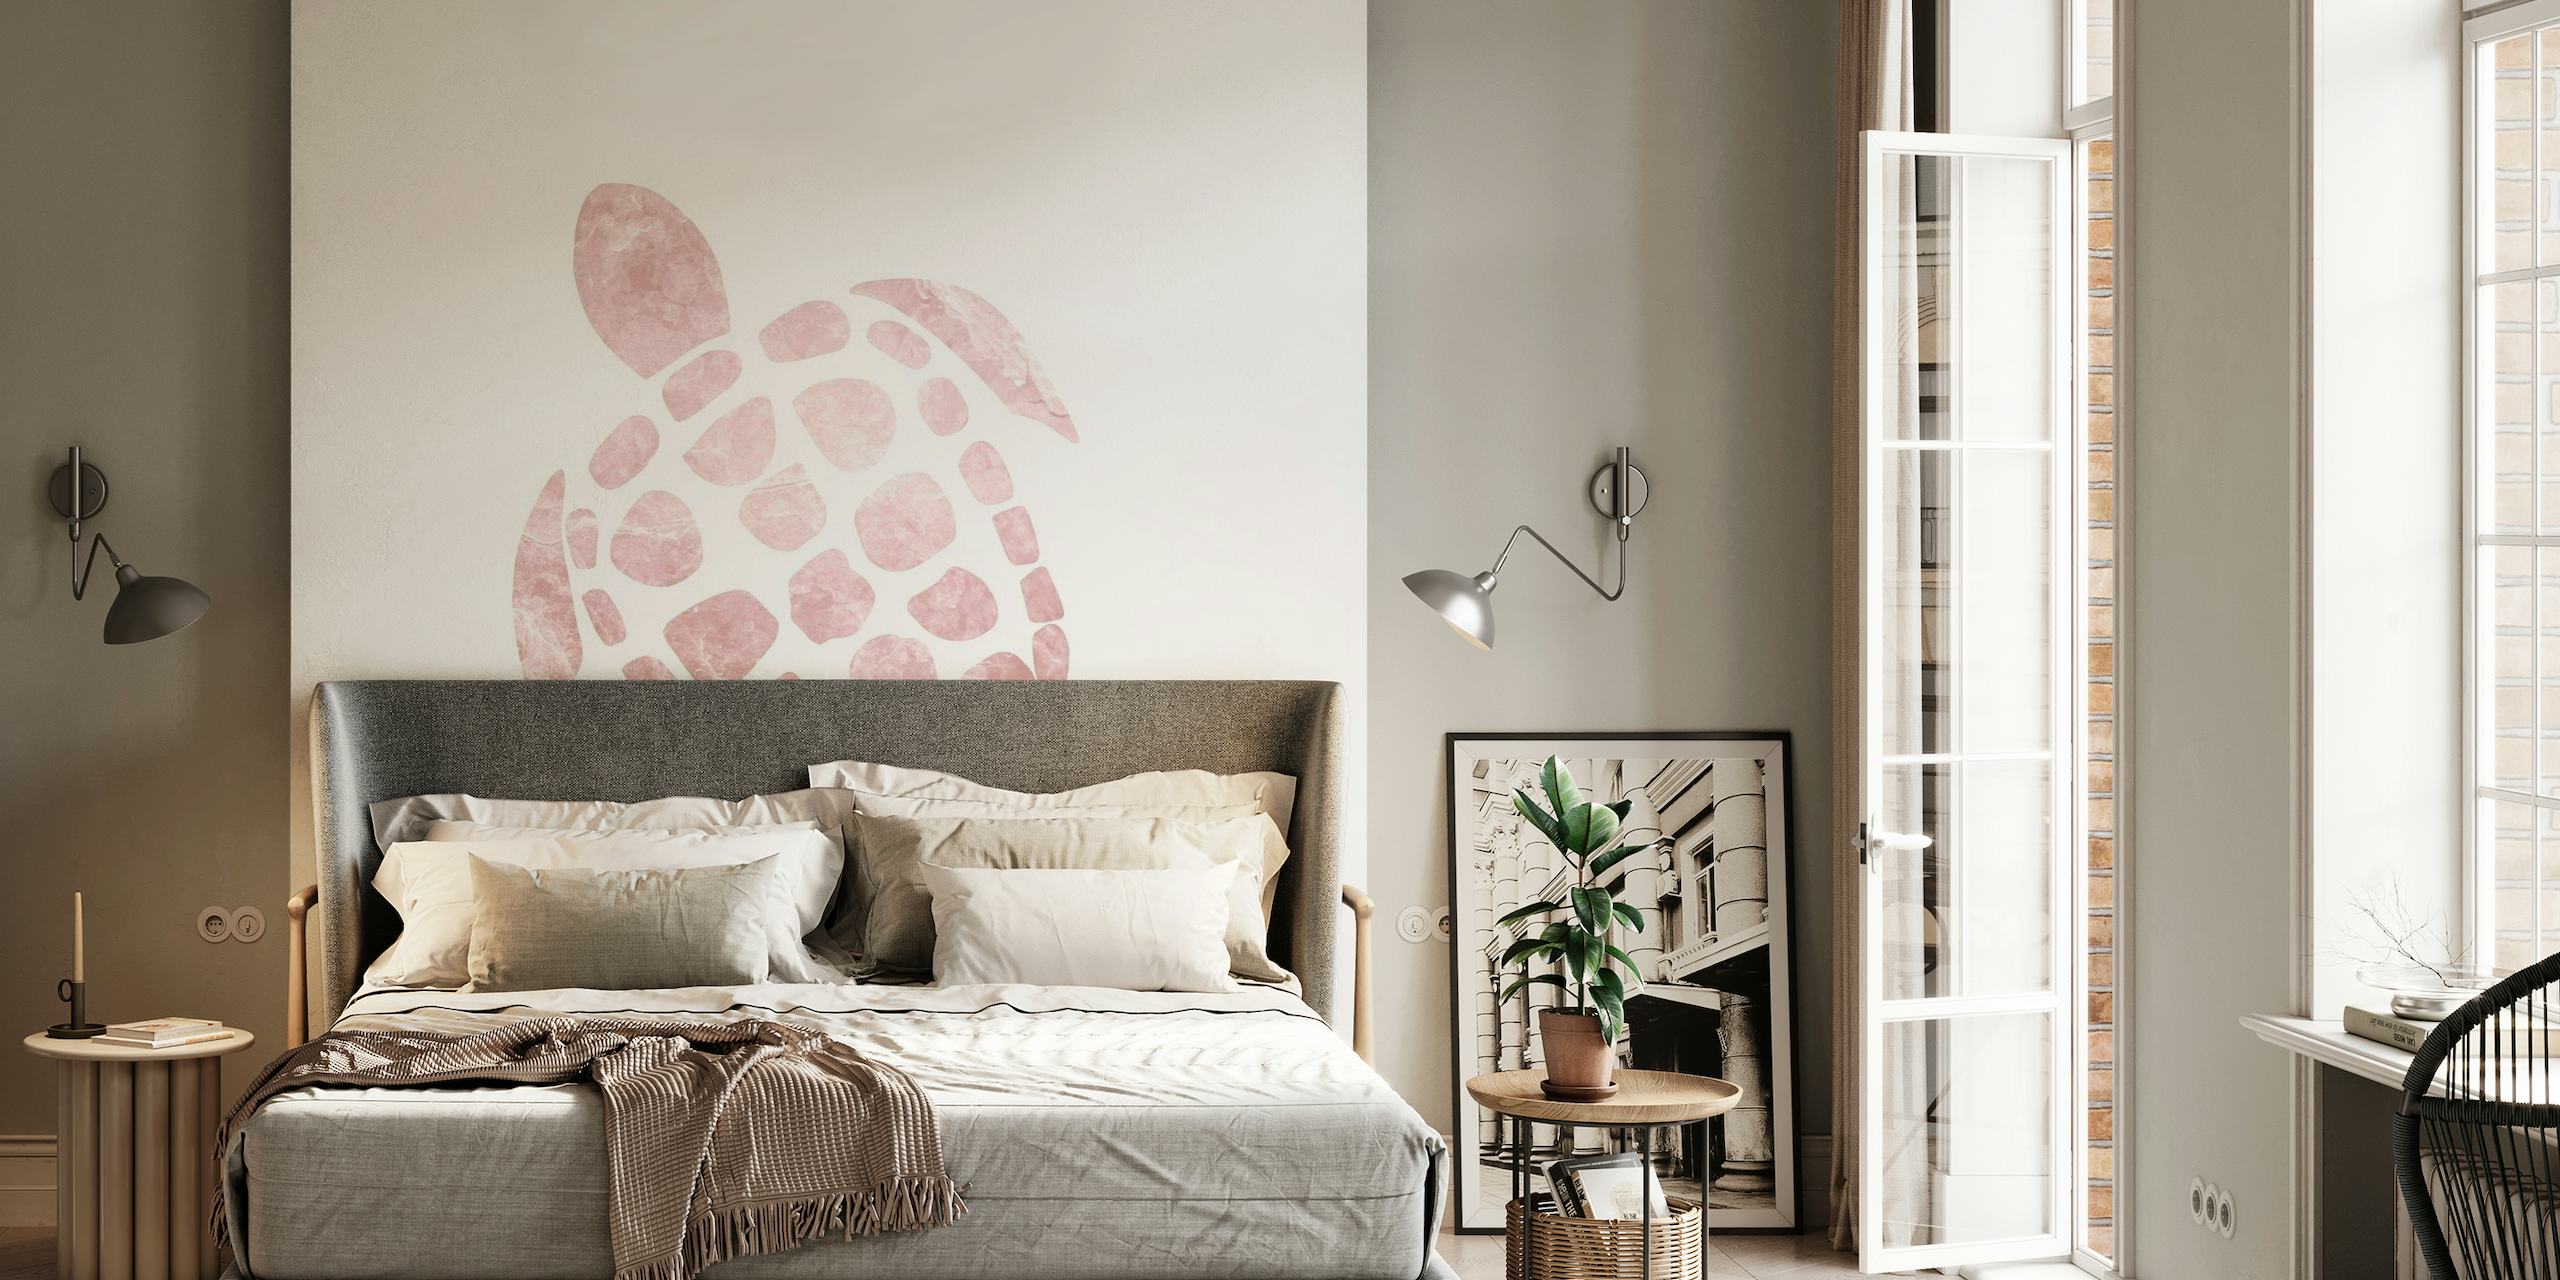 Minimalistische rosa Meeresschildkröten-Wandbildillustration auf weißem Hintergrund, perfekt für eine ruhige Inneneinrichtung